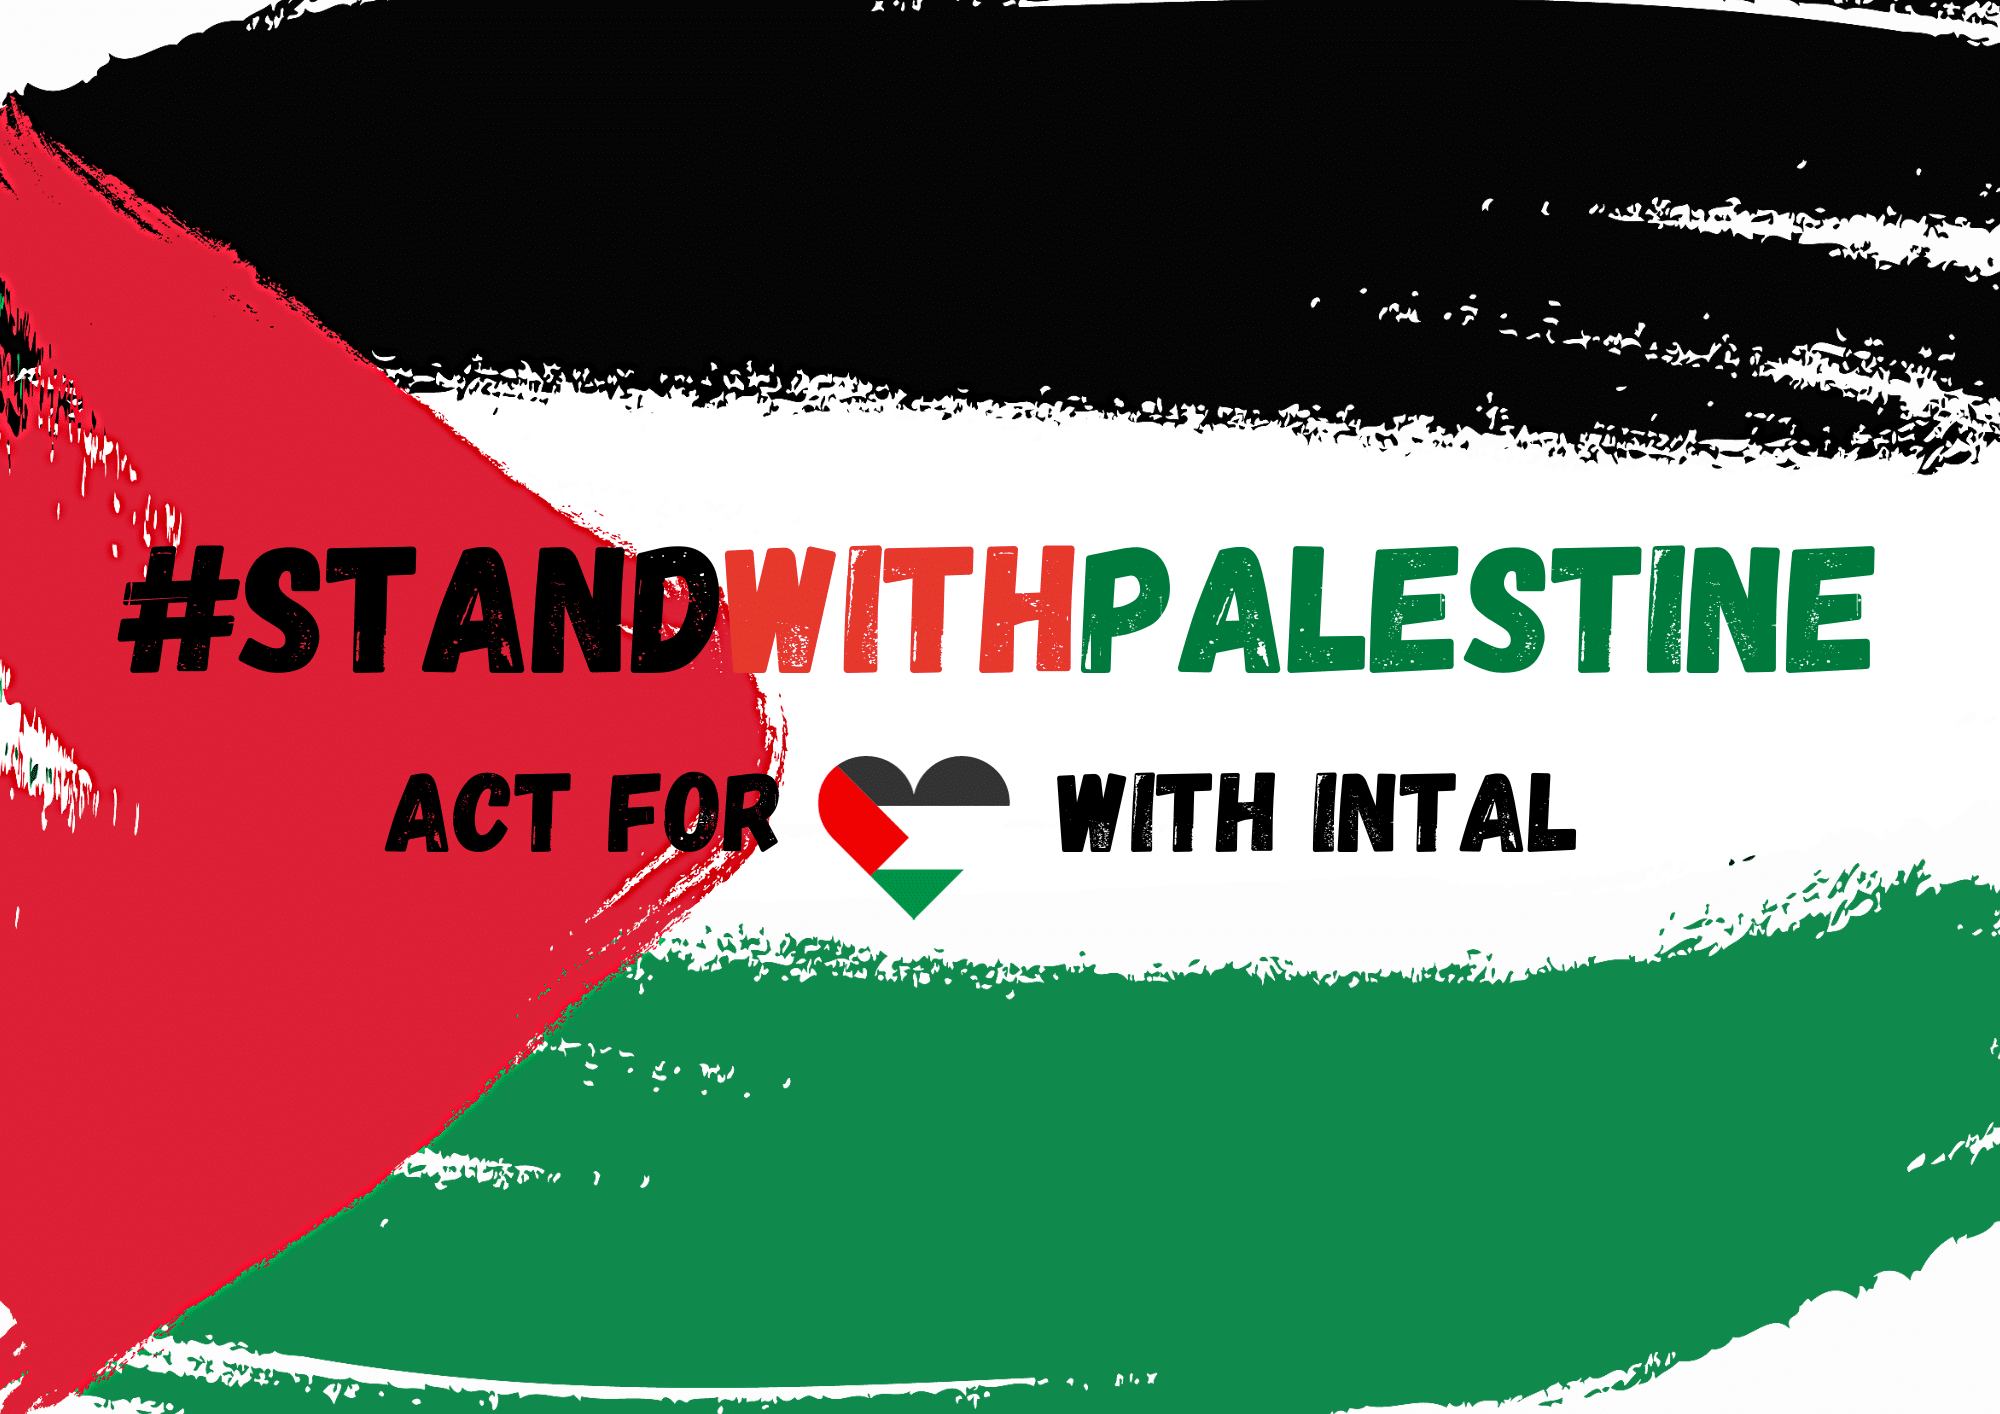 Agissez pour la Palestine avec intal !